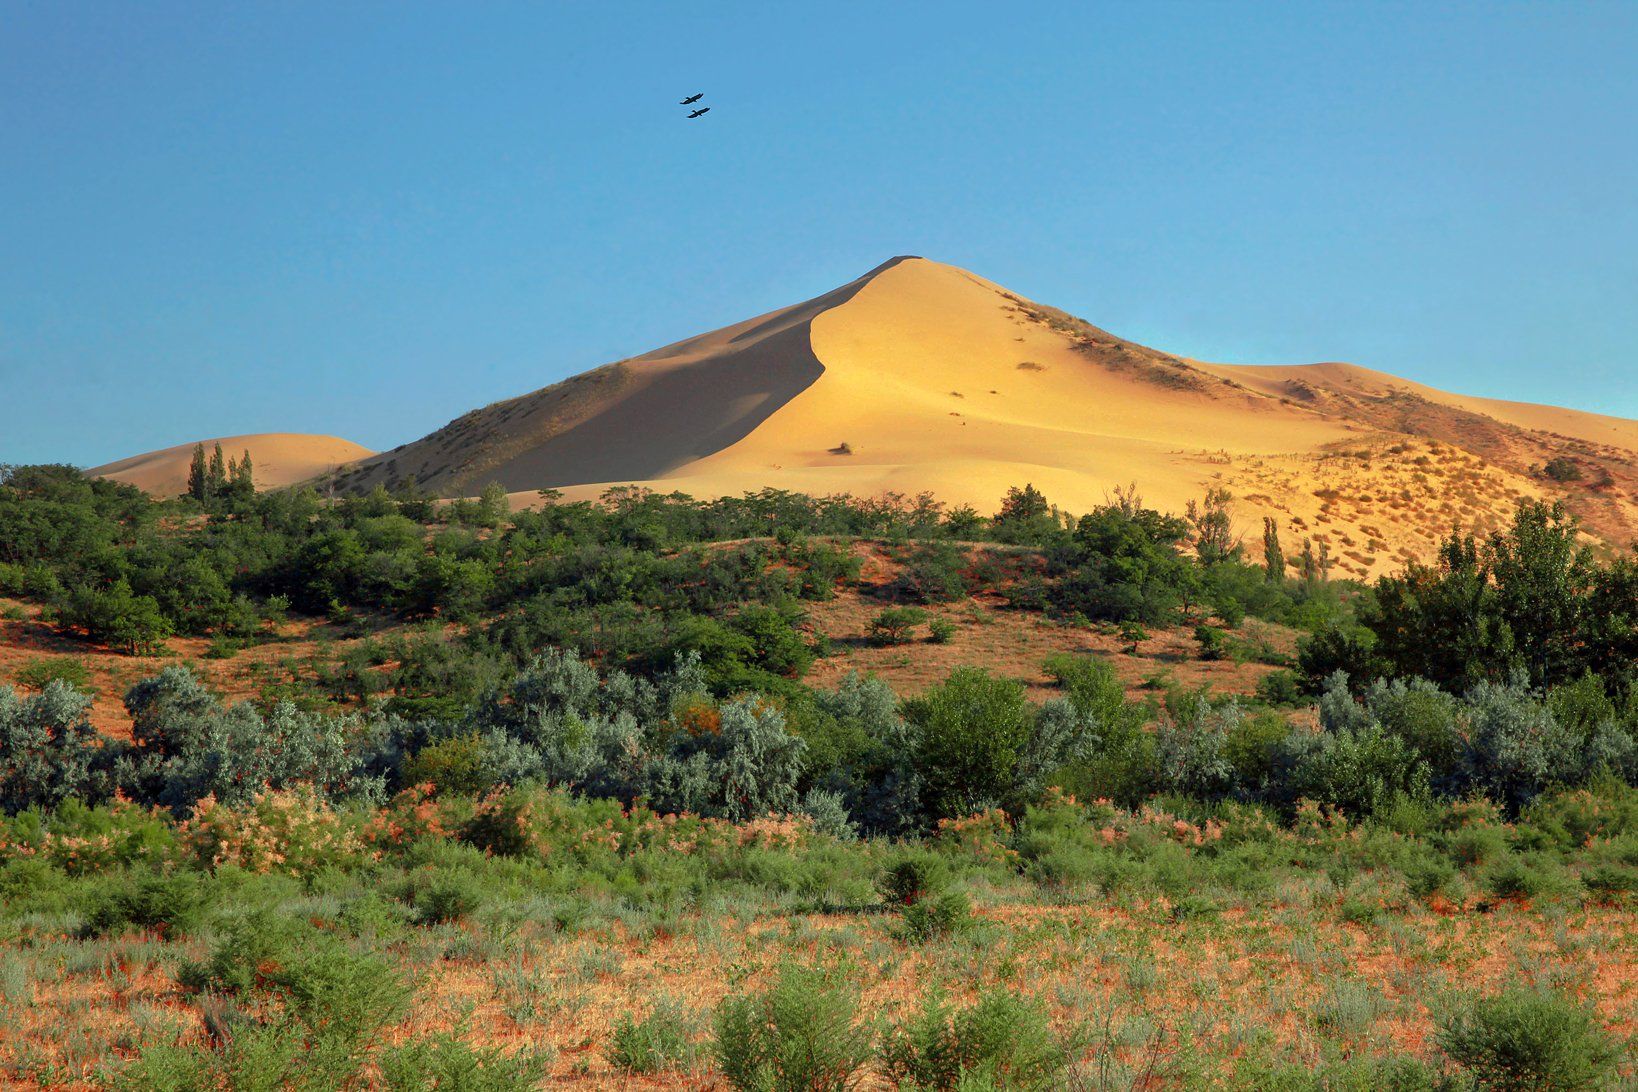 песок,песчаная гора,сарыкум,жёлтые пески,дагестан,заповедник., Marat Magov